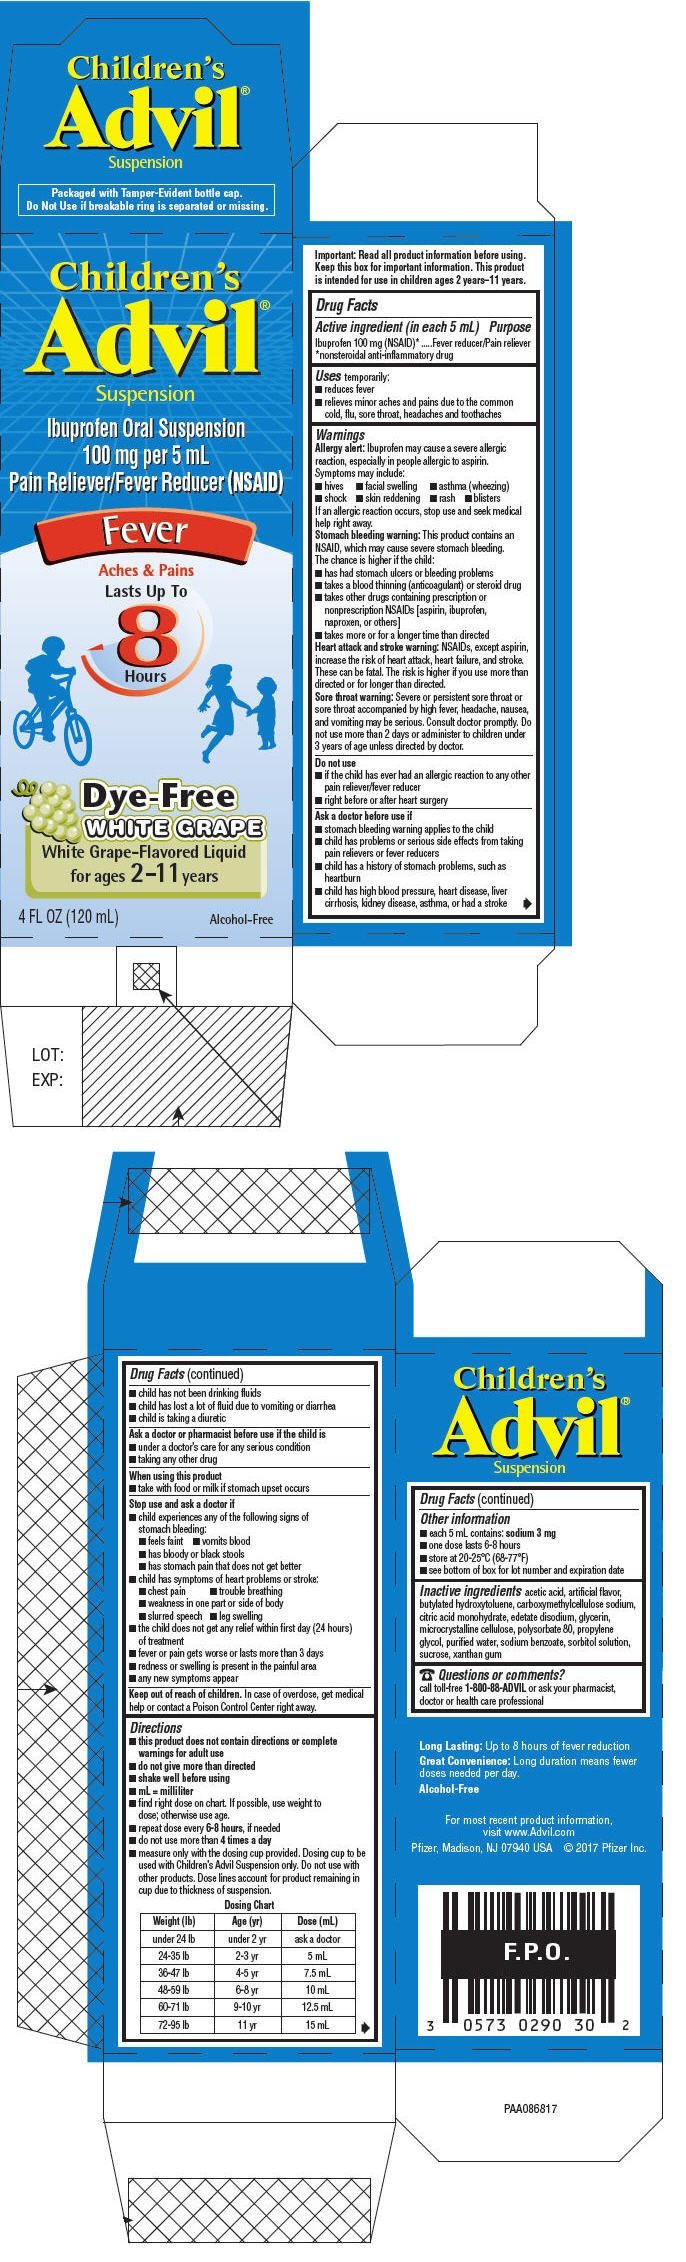 Advil Dosage Chart For Kids